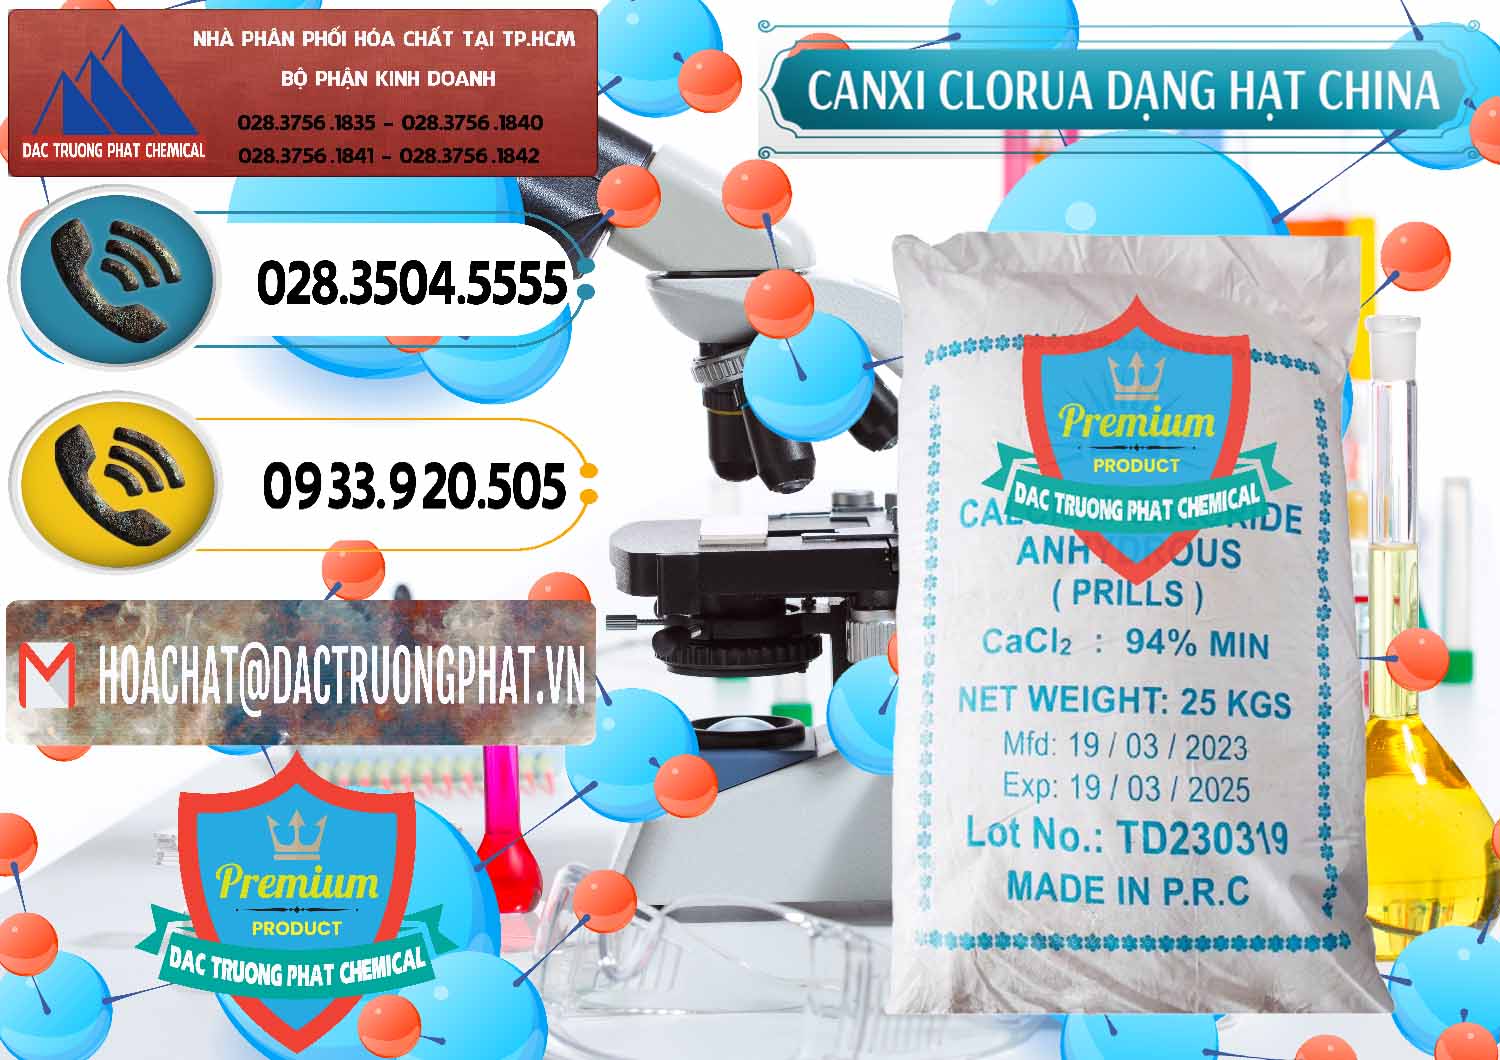 Cty cung ứng _ bán CaCl2 – Canxi Clorua 94% Dạng Hạt Trung Quốc China - 0373 - Nơi chuyên phân phối ( nhập khẩu ) hóa chất tại TP.HCM - hoachatdetnhuom.vn